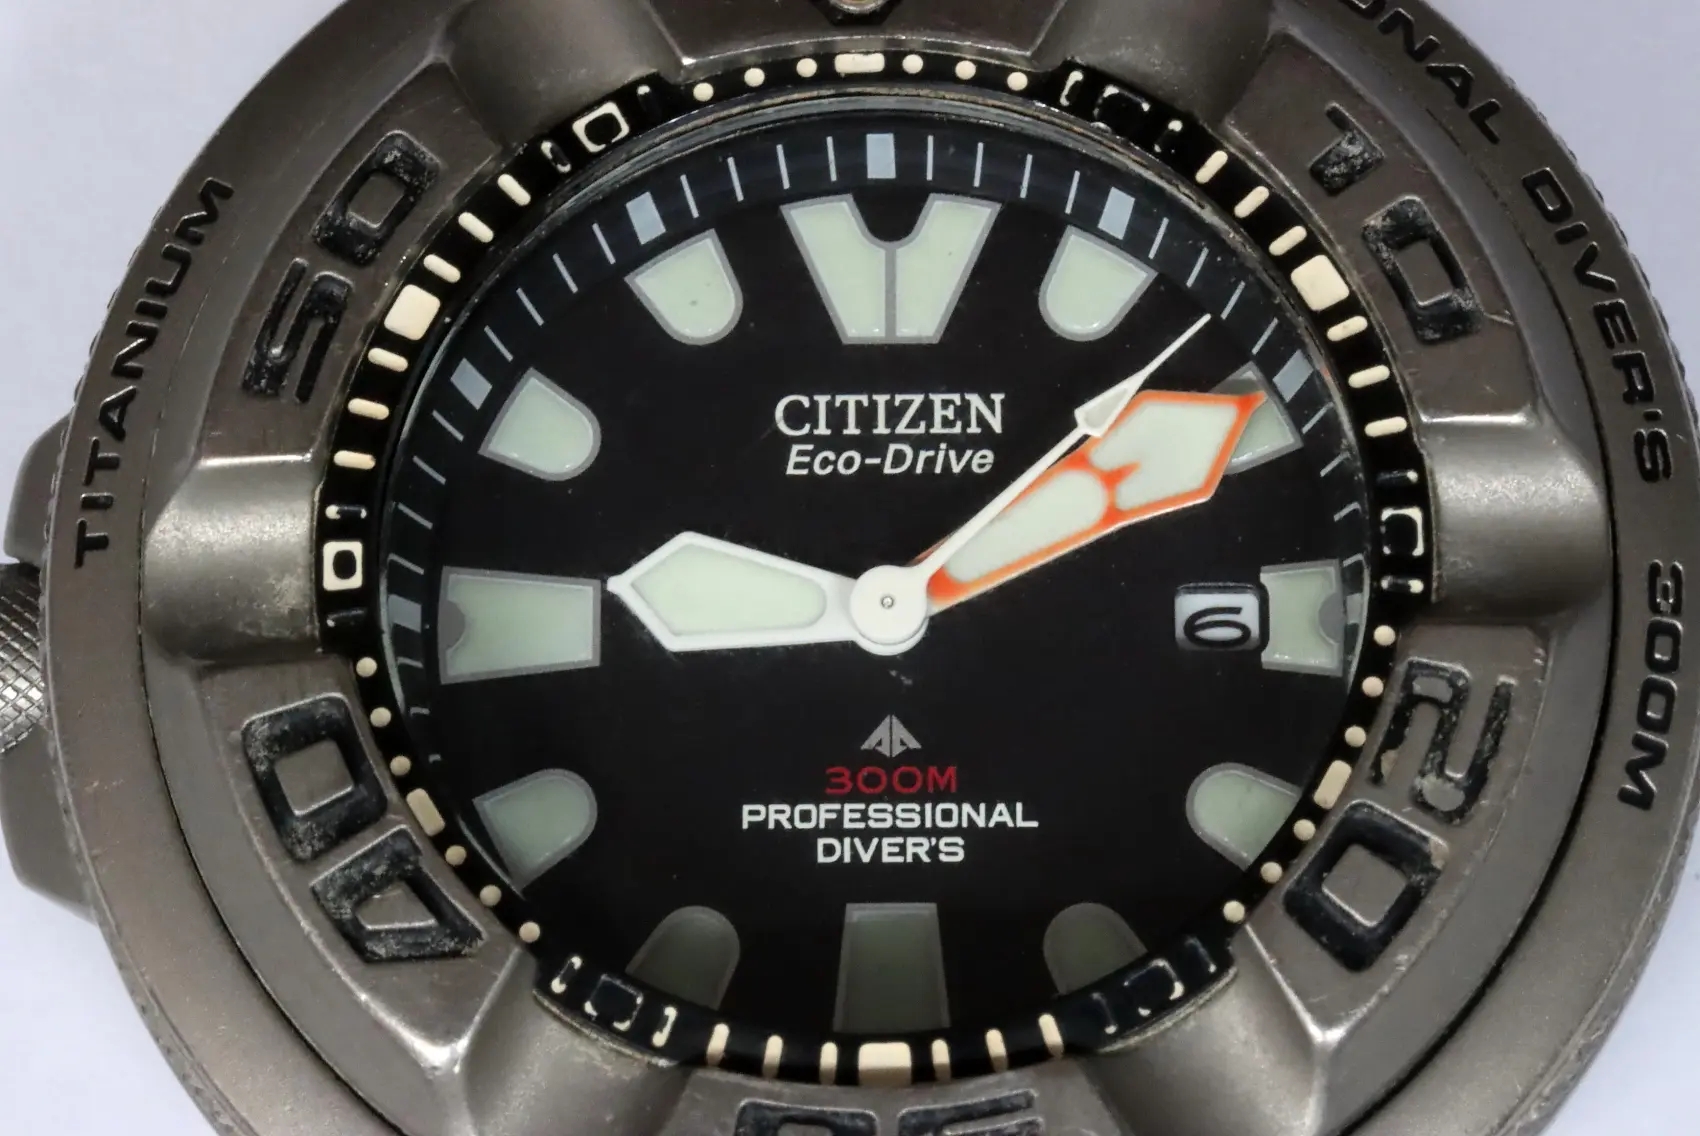 Citizen B873-S025664 professional titanium divers needs repair